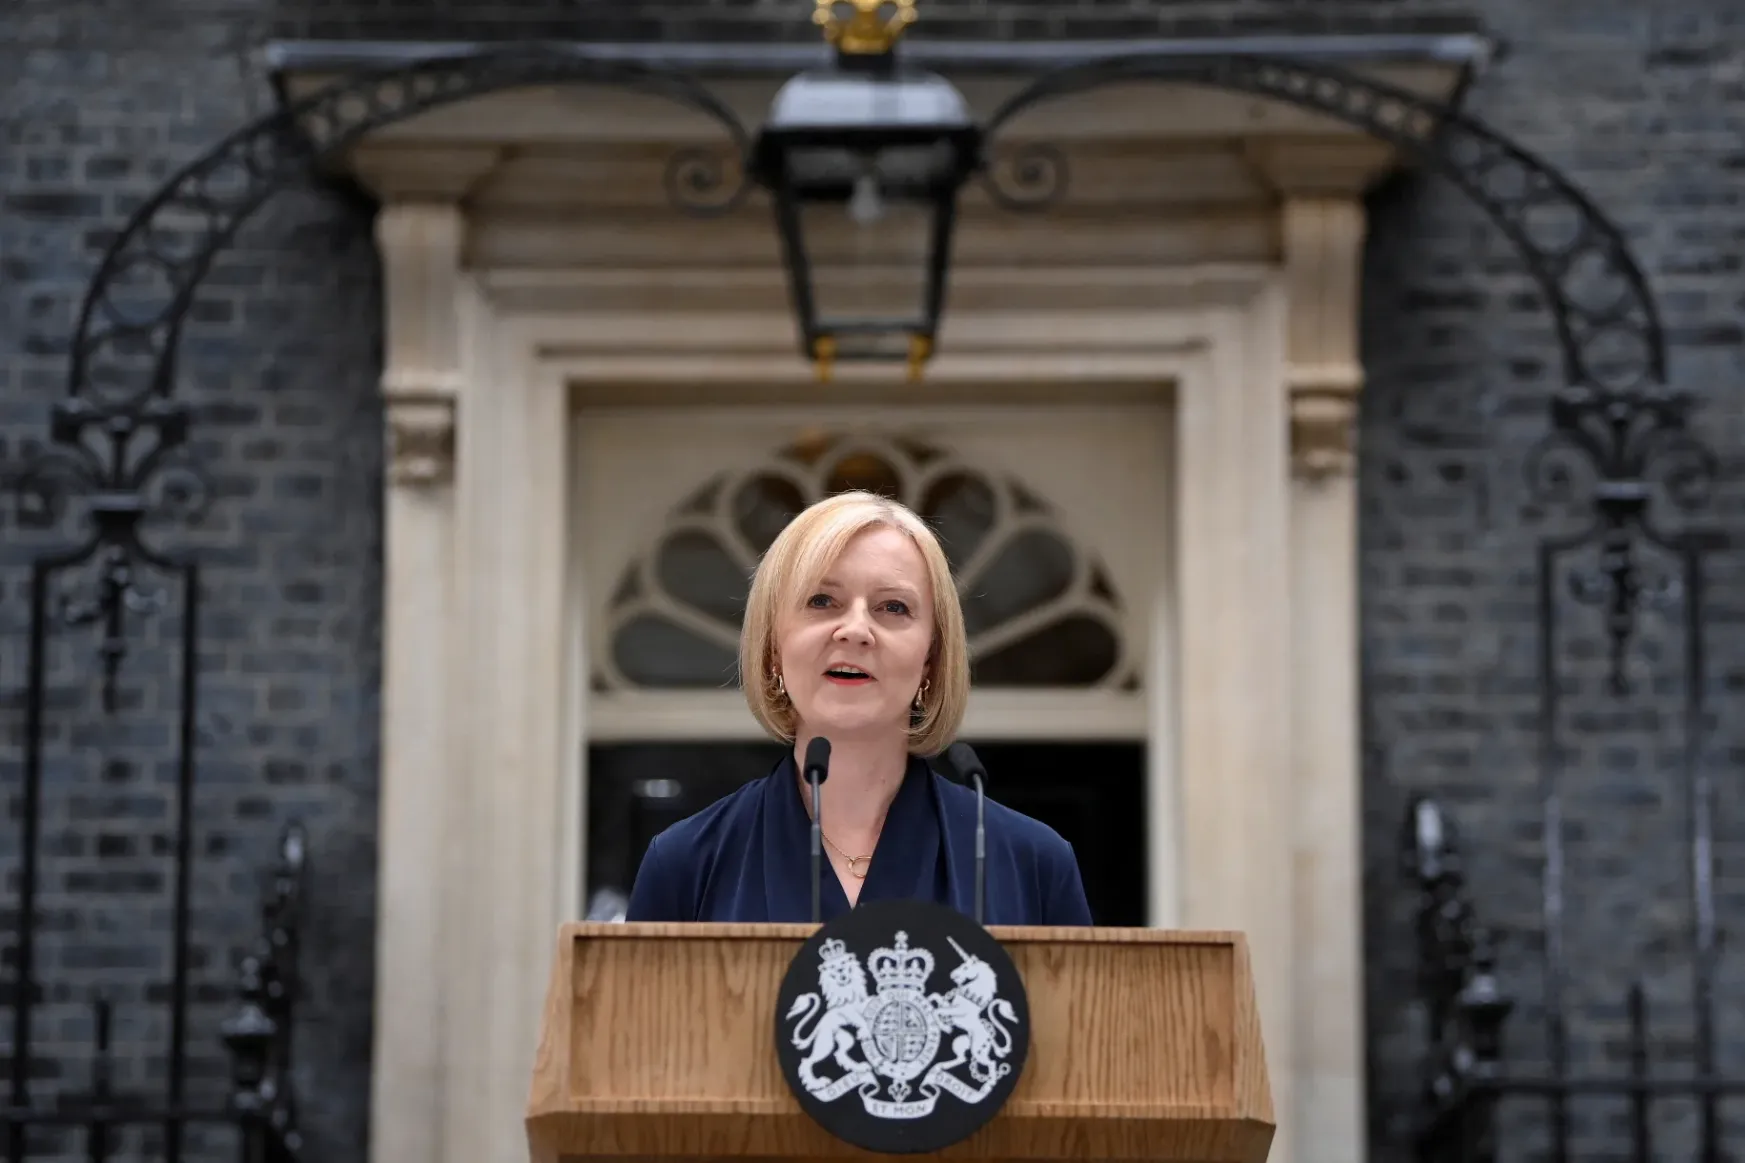 Liz Truss: Boris Johnsont az utókor egy nagyon fontos miniszterelnökként fogja számon tartani